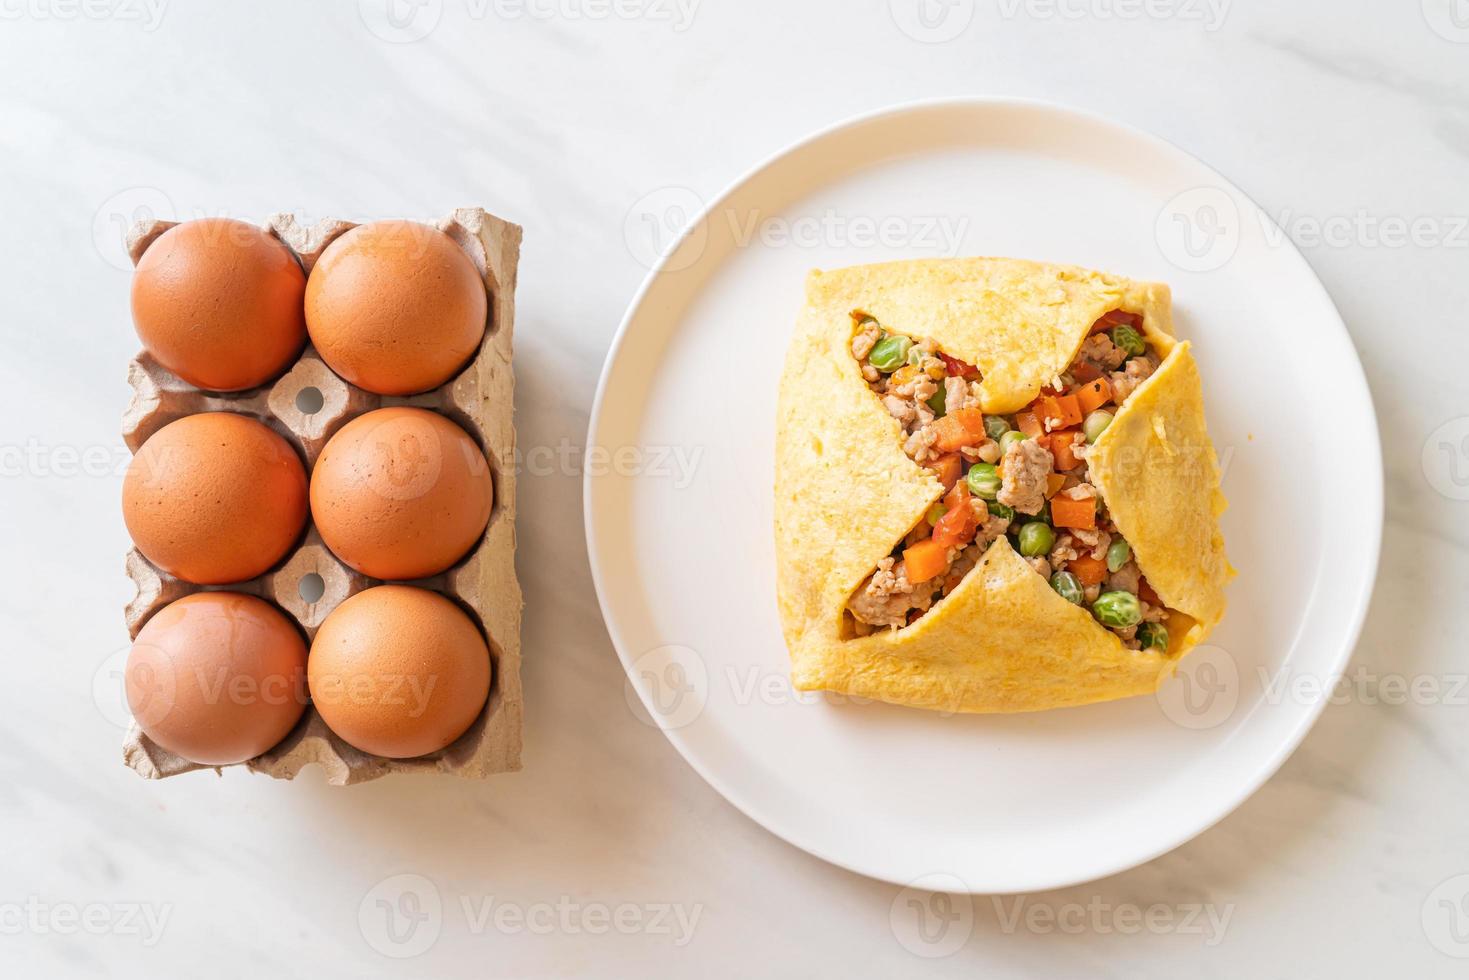 embrulho de ovo ou ovo recheado com carne de porco picada, cenoura, tomate e ervilhas foto